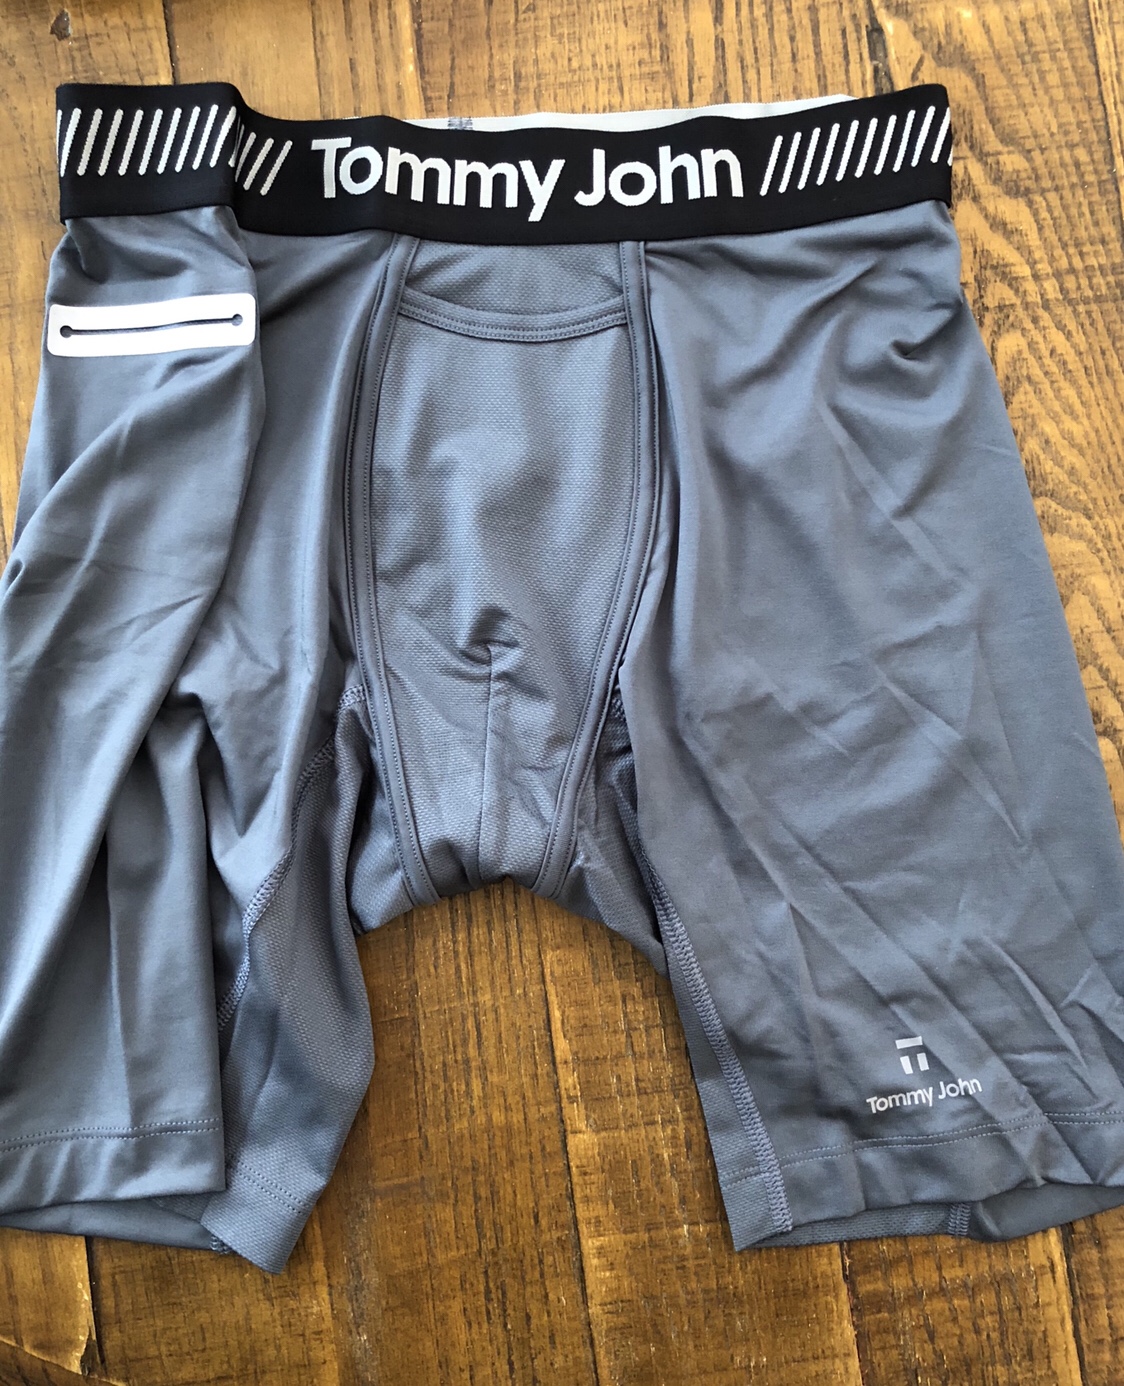 tommy john underwear pocket